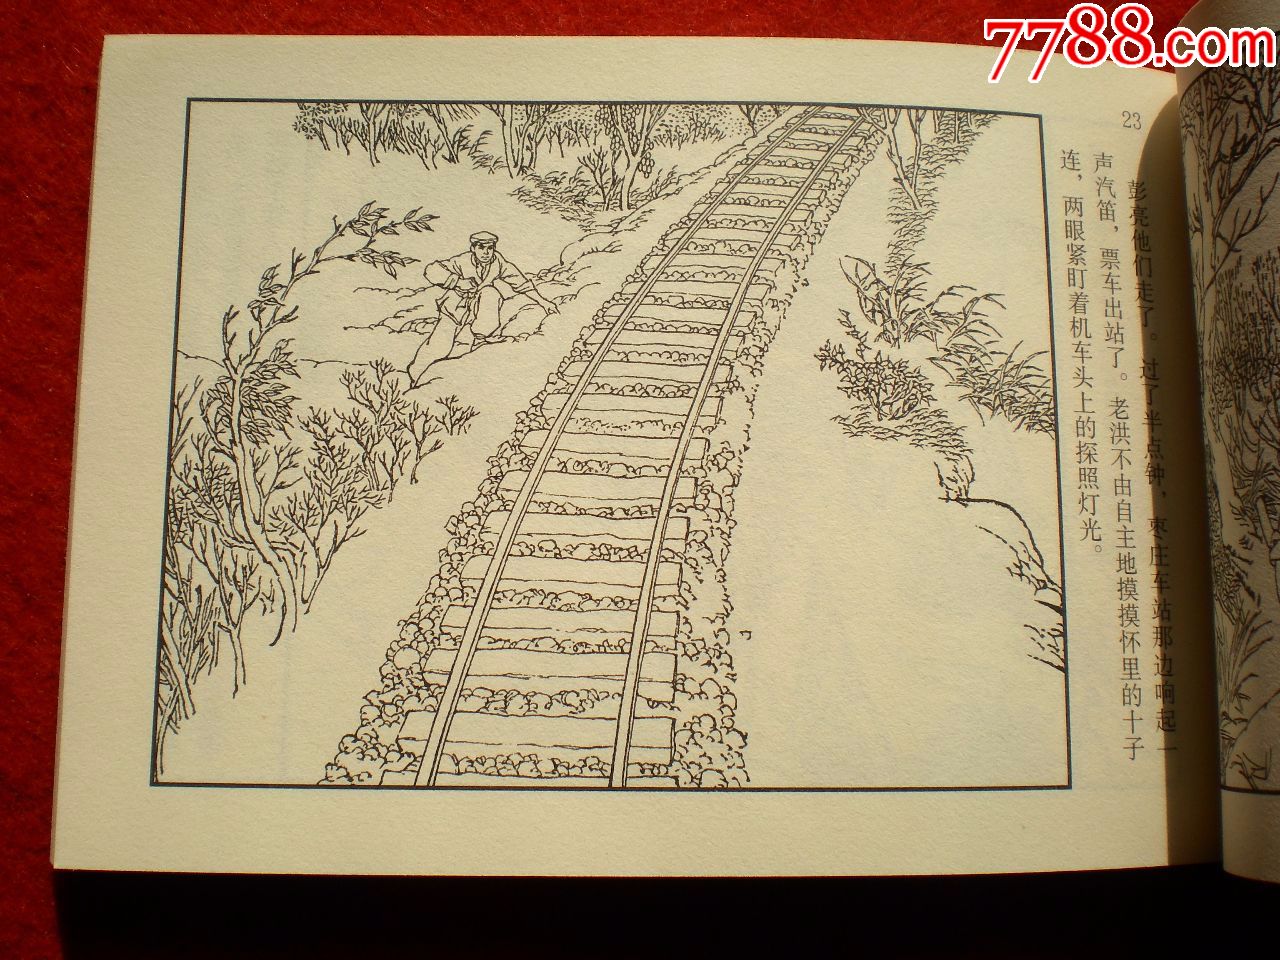 1955铁道游击队连环画图片